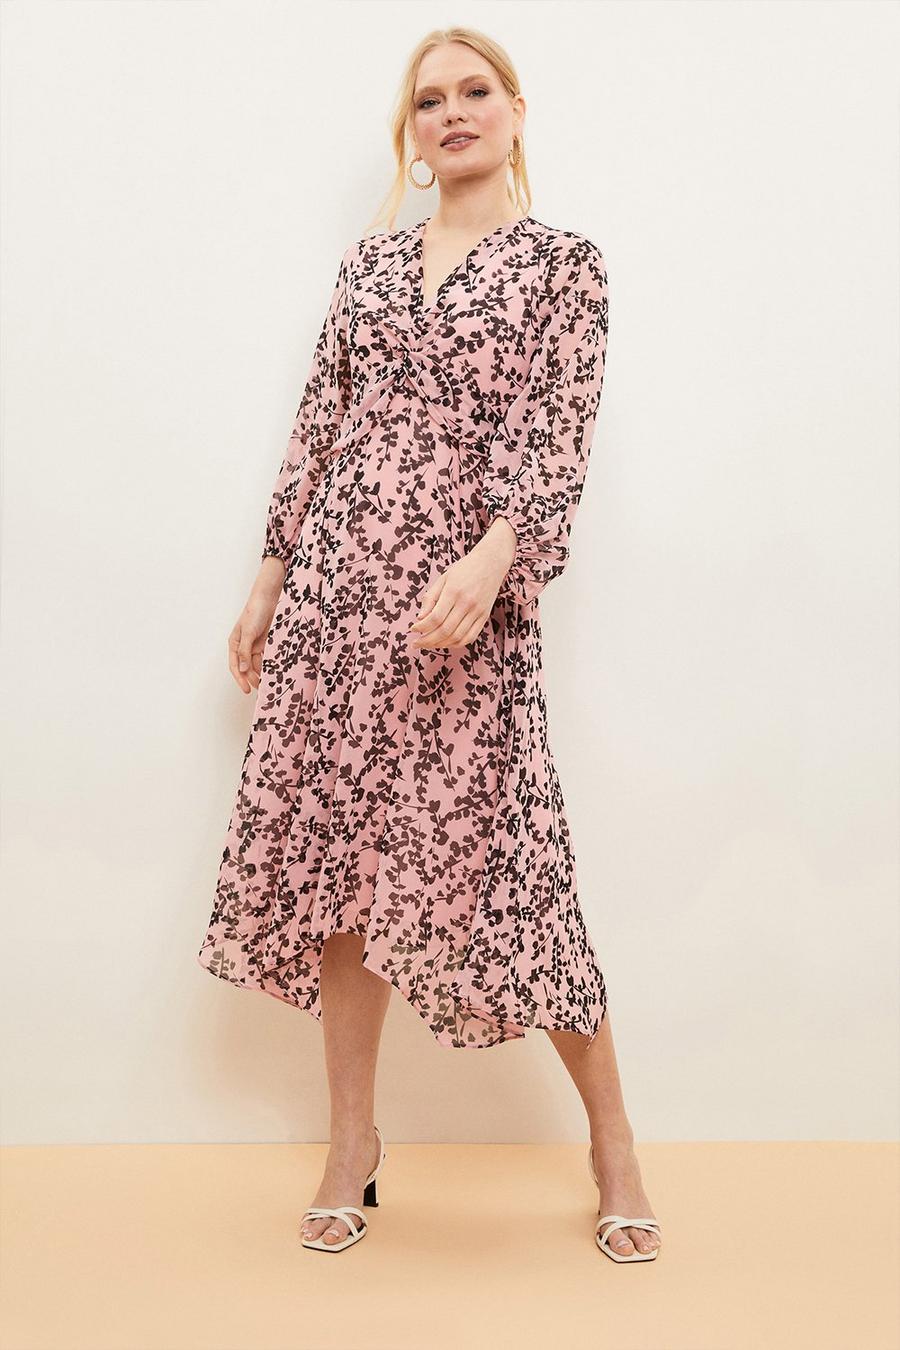 Petite Blush Floral Twist Front Dress